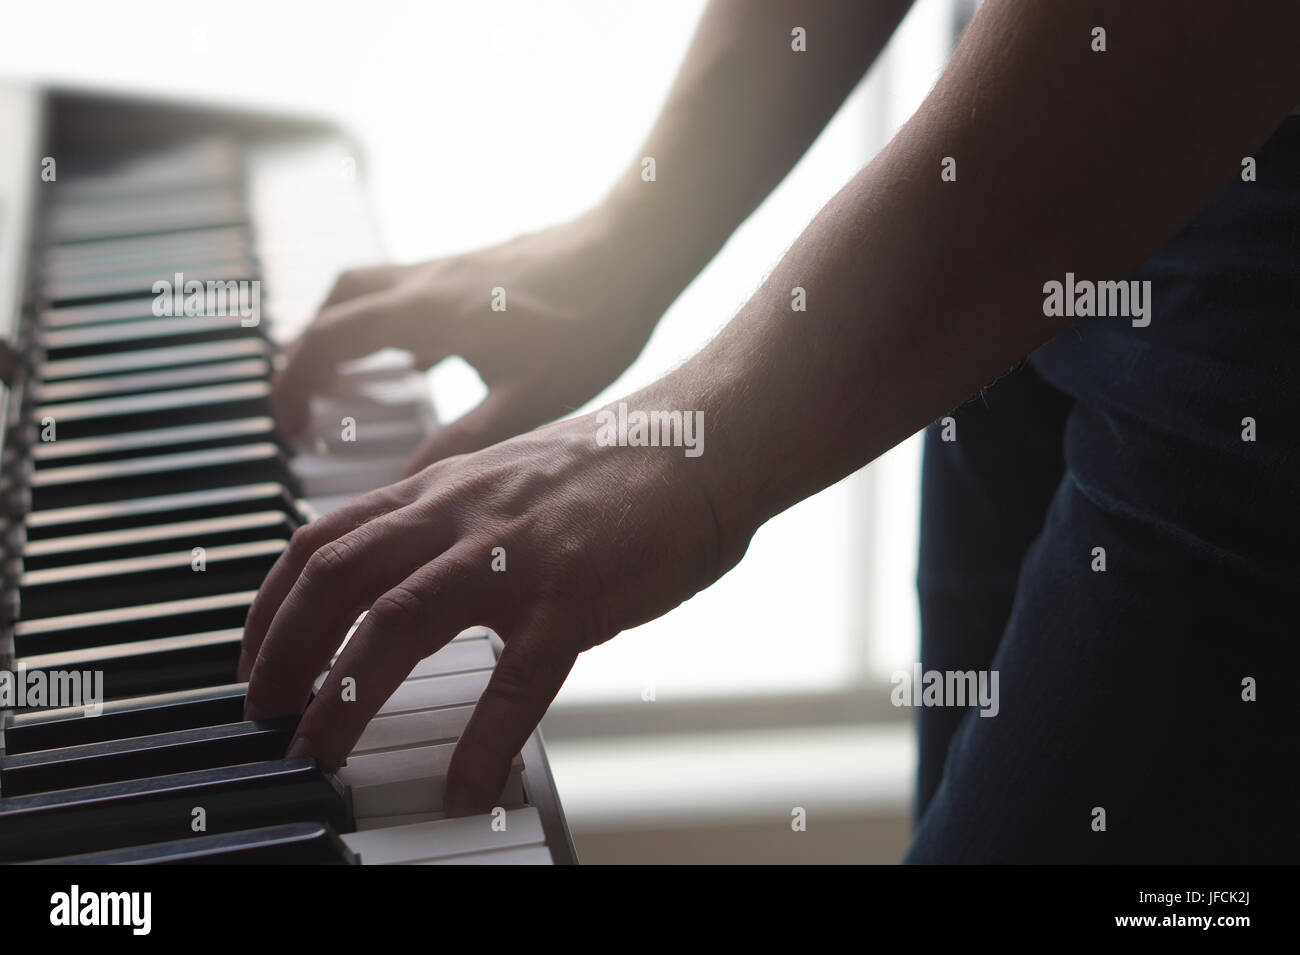 L'uomo suonare il pianoforte in piedi in home studio. Umore ambiente con luce solare. Close up dei maschi di mani sui tasti della tastiera elettronica. Persona che riproduce la musica. Foto Stock